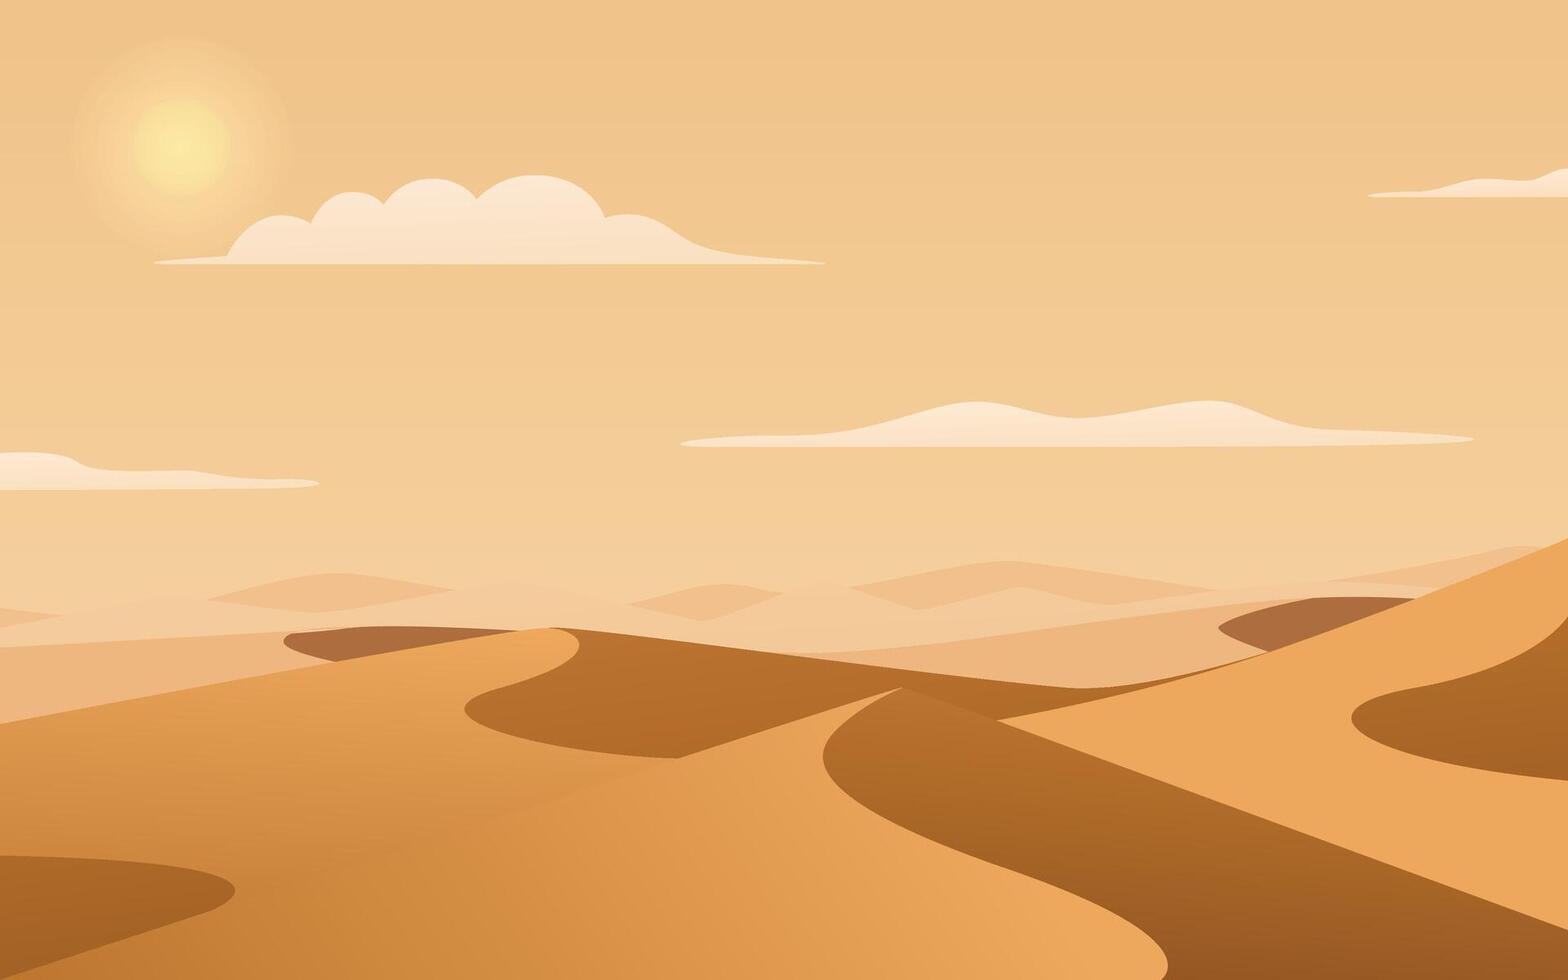 désert paysage avec Soleil vecteur illustration. désert dunes